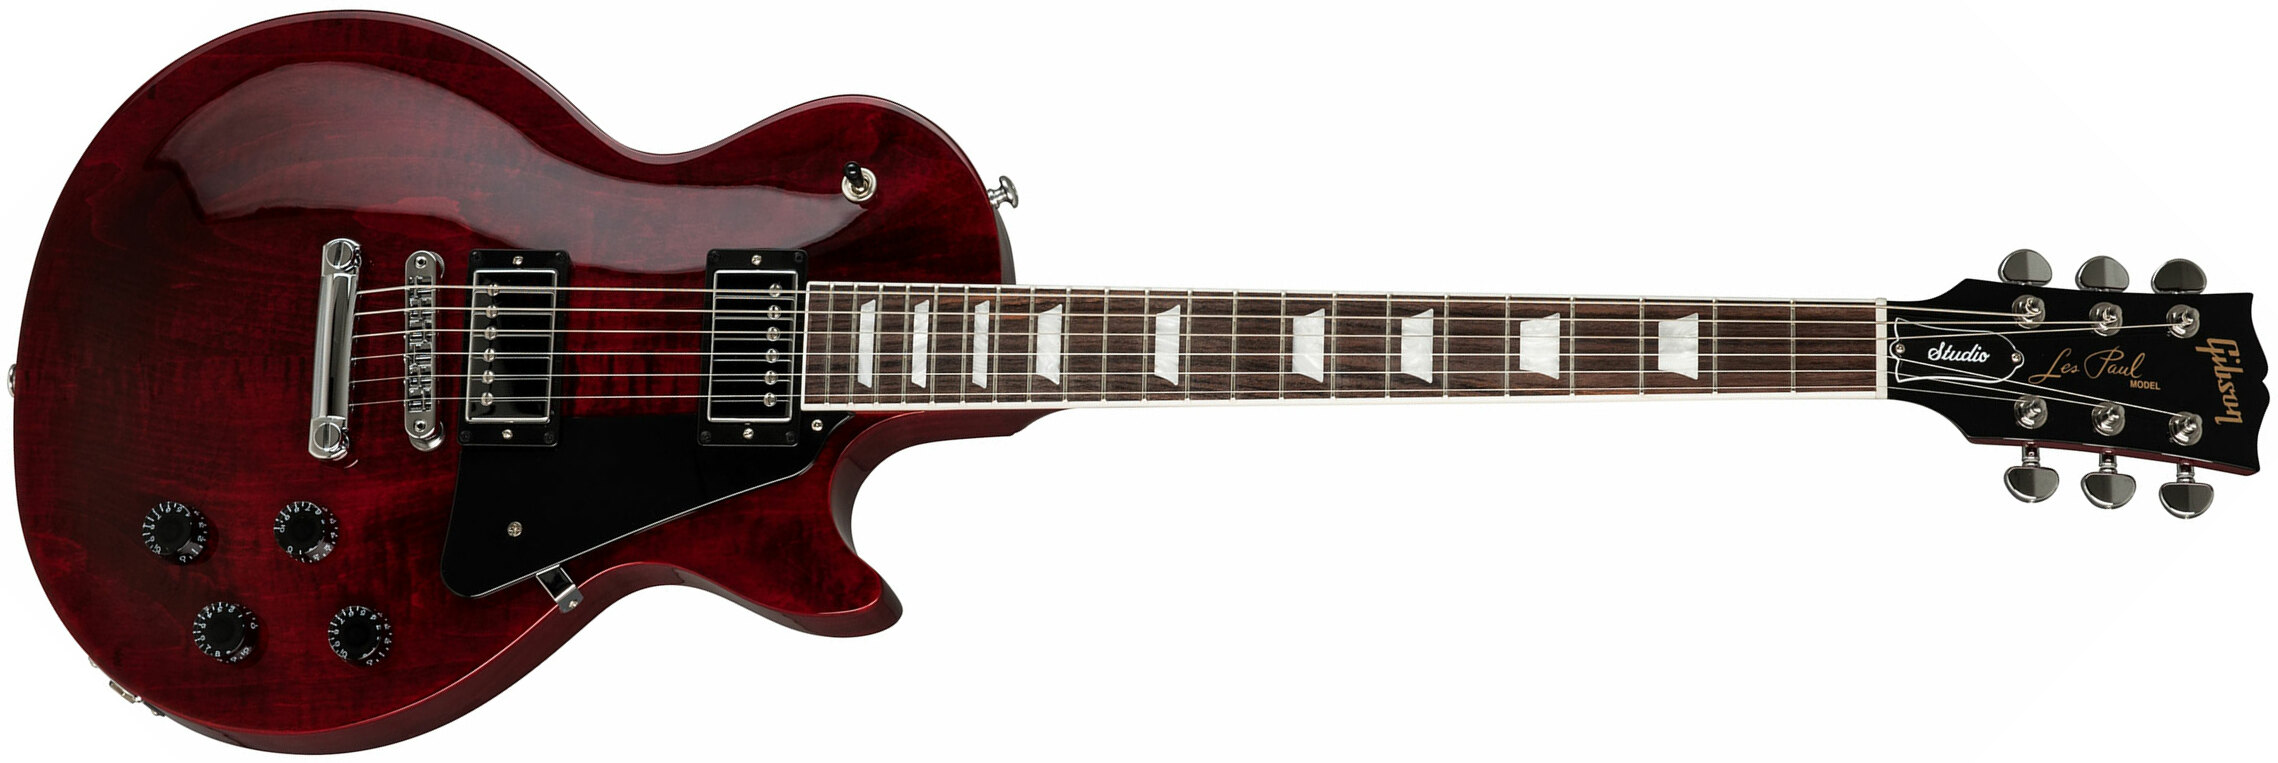 Gibson Les Paul Studio 2019 Hh Ht Rw - Wine Red - Enkel gesneden elektrische gitaar - Main picture